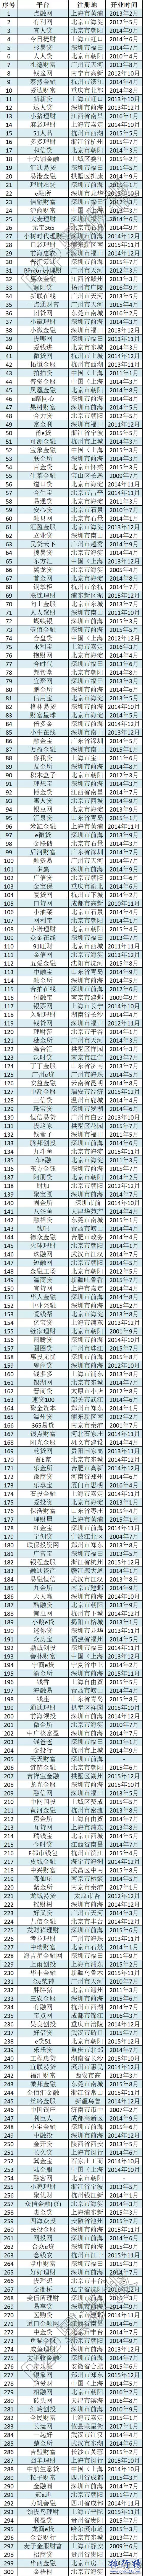 最全2017中国P2P网贷平台名单(1854家完整版)